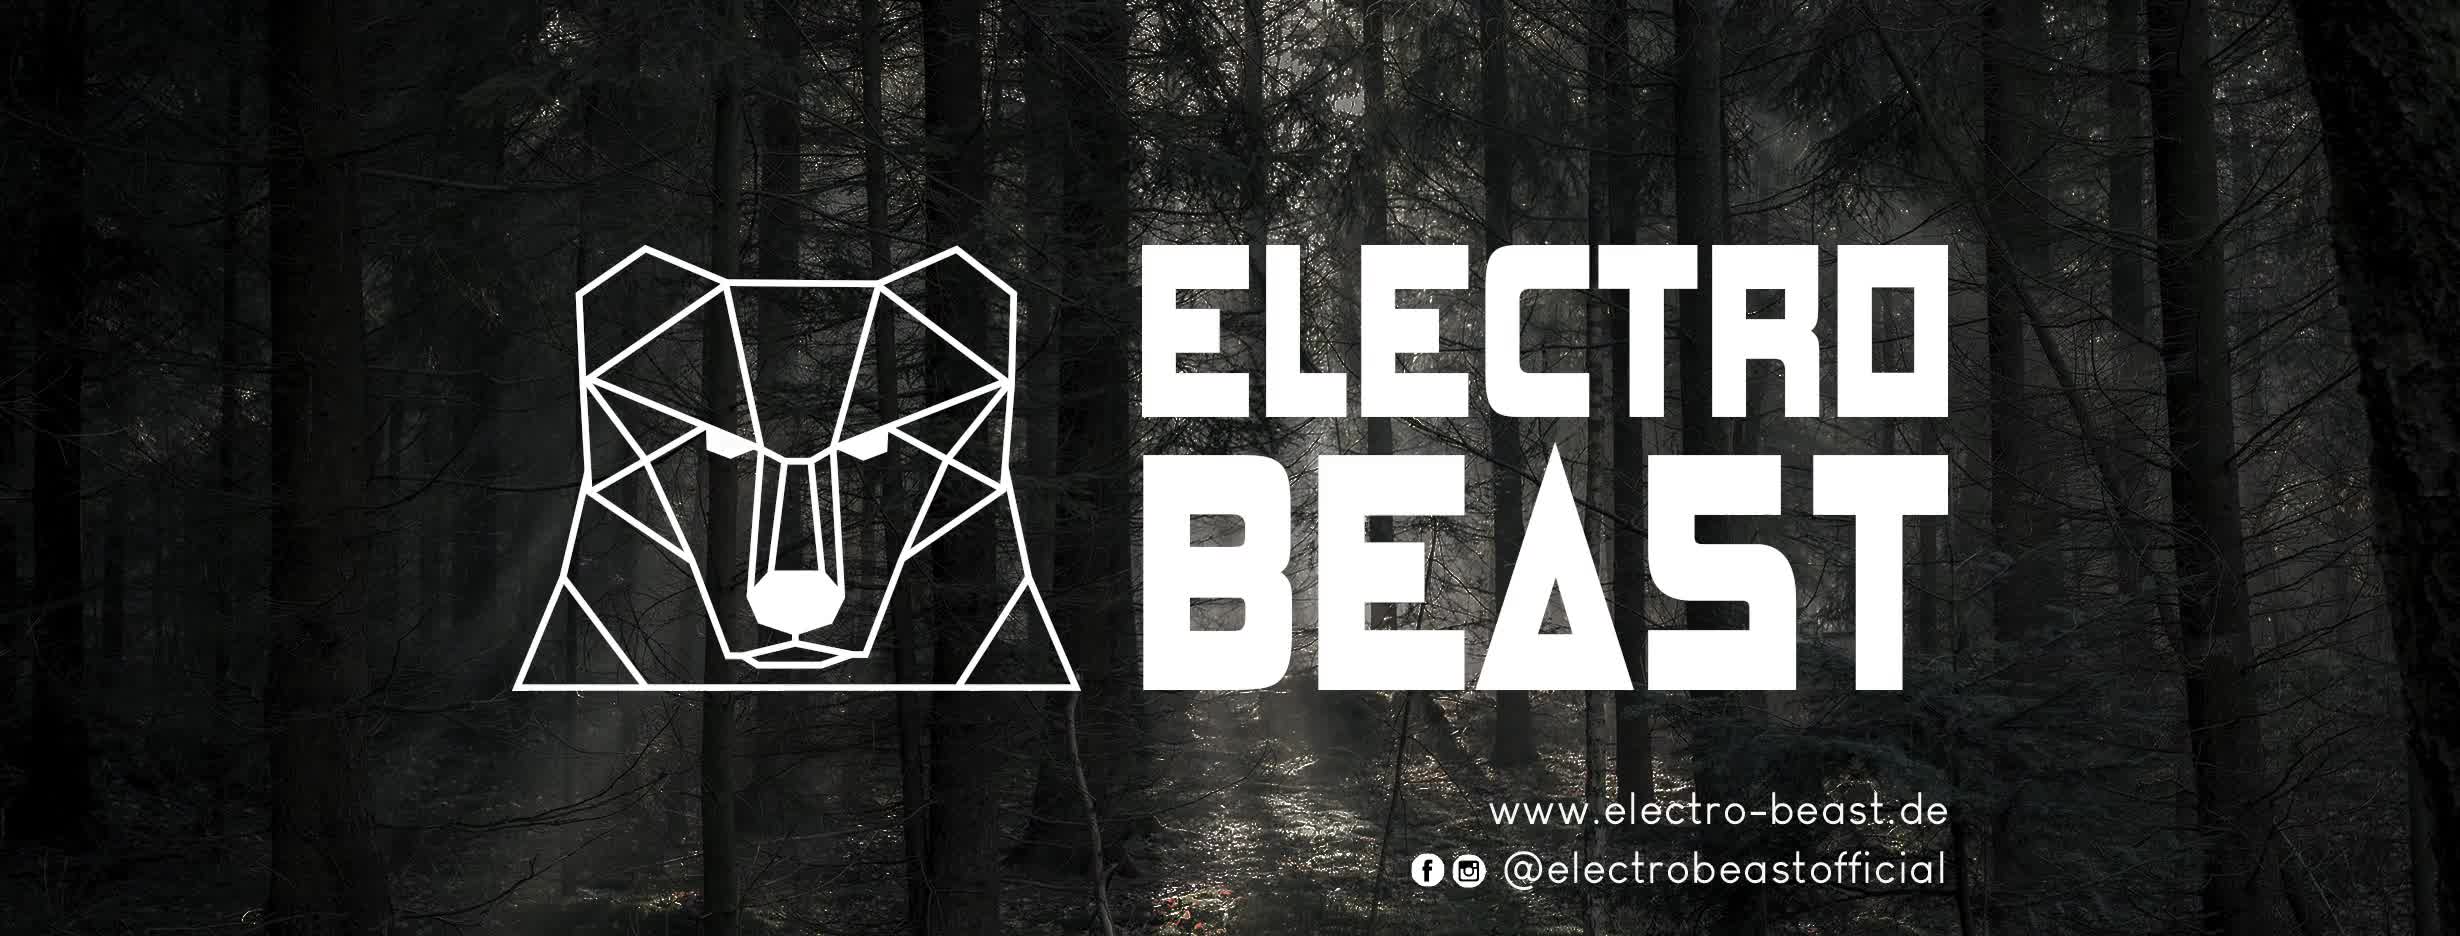 Electro Beast